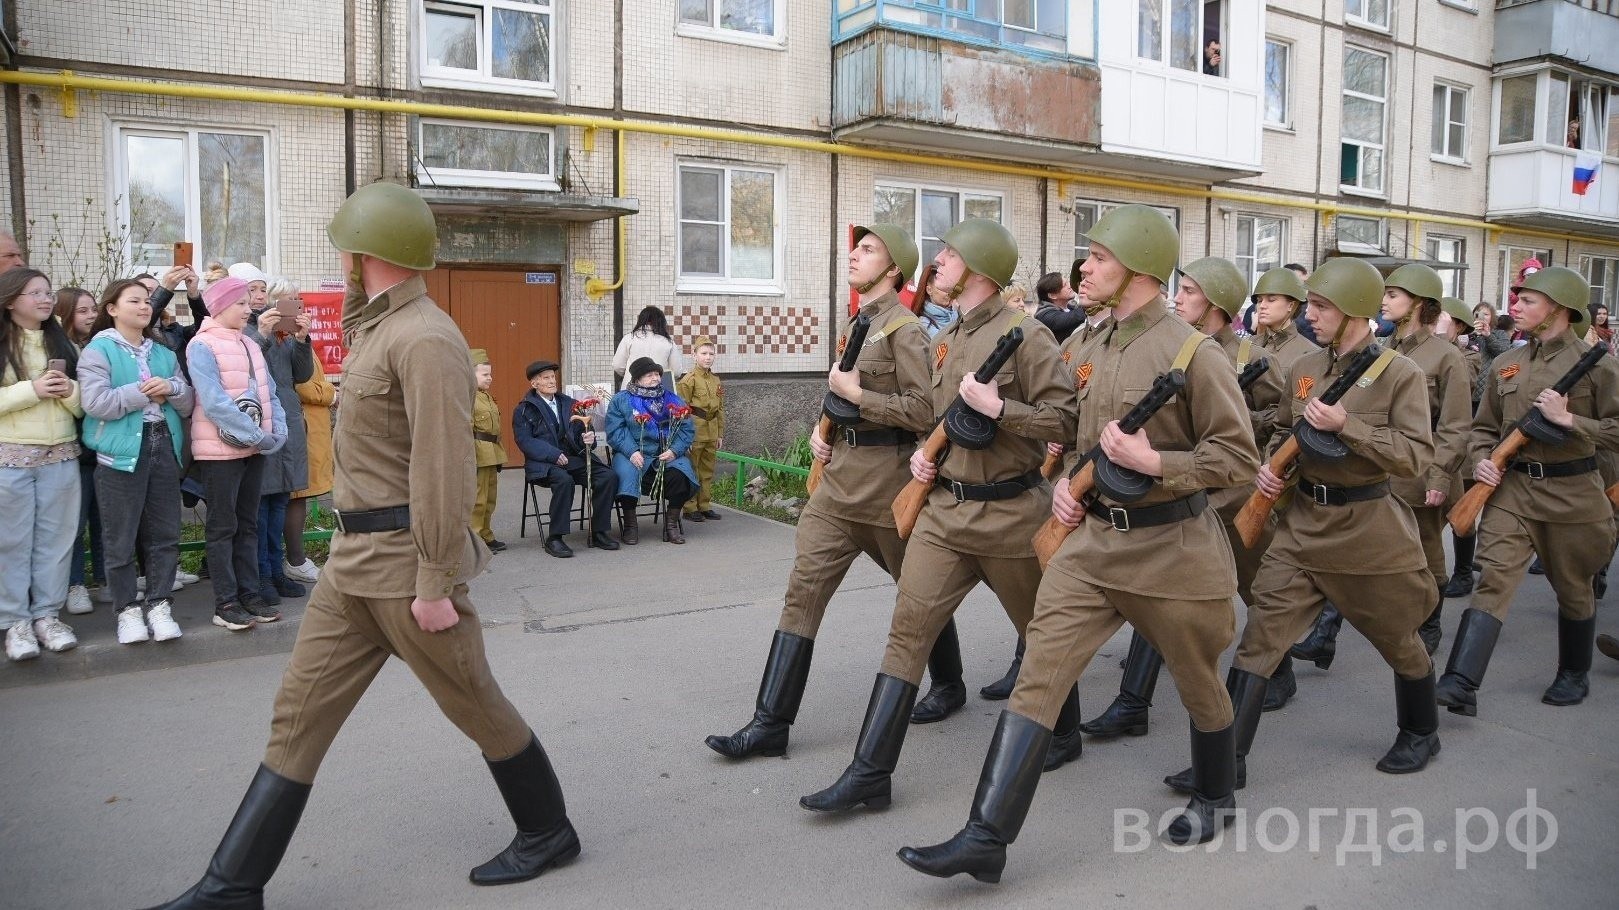 Парад Победы, мини-парады во дворах и концерты пройдут в Вологде 9 мая